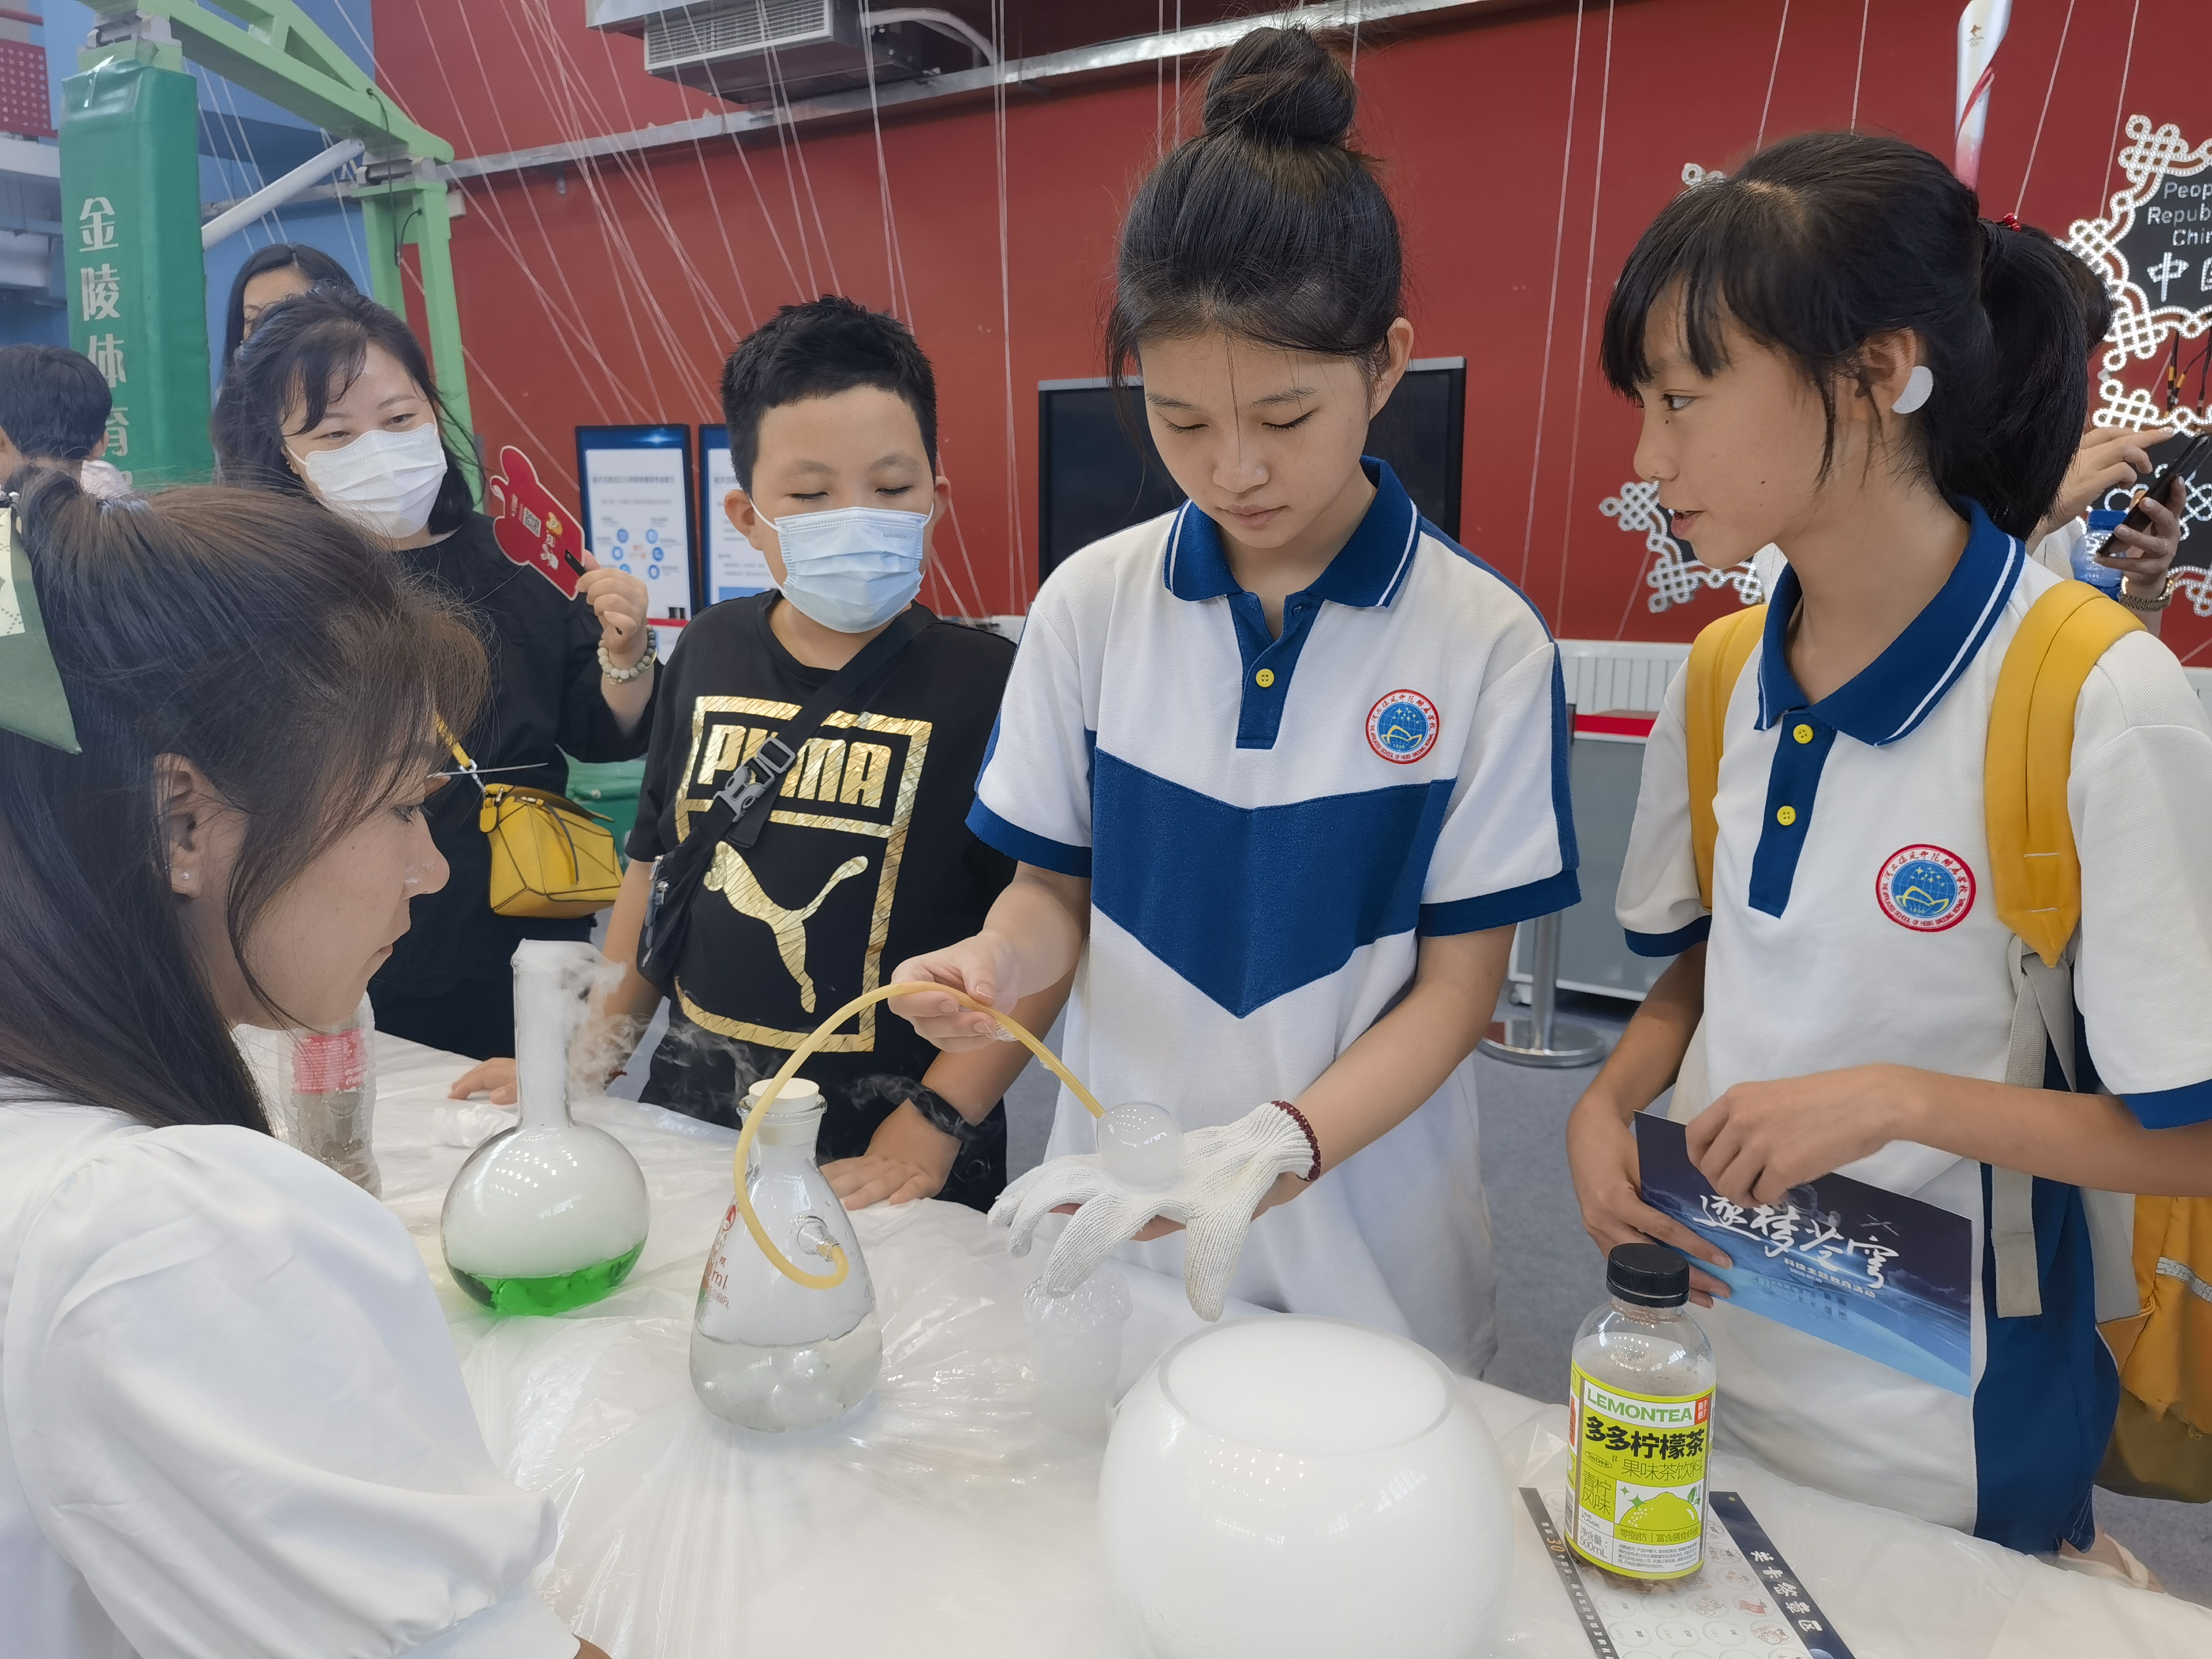 中小学生逐梦苍穹,北京市八一学校开启科技主题教育活动